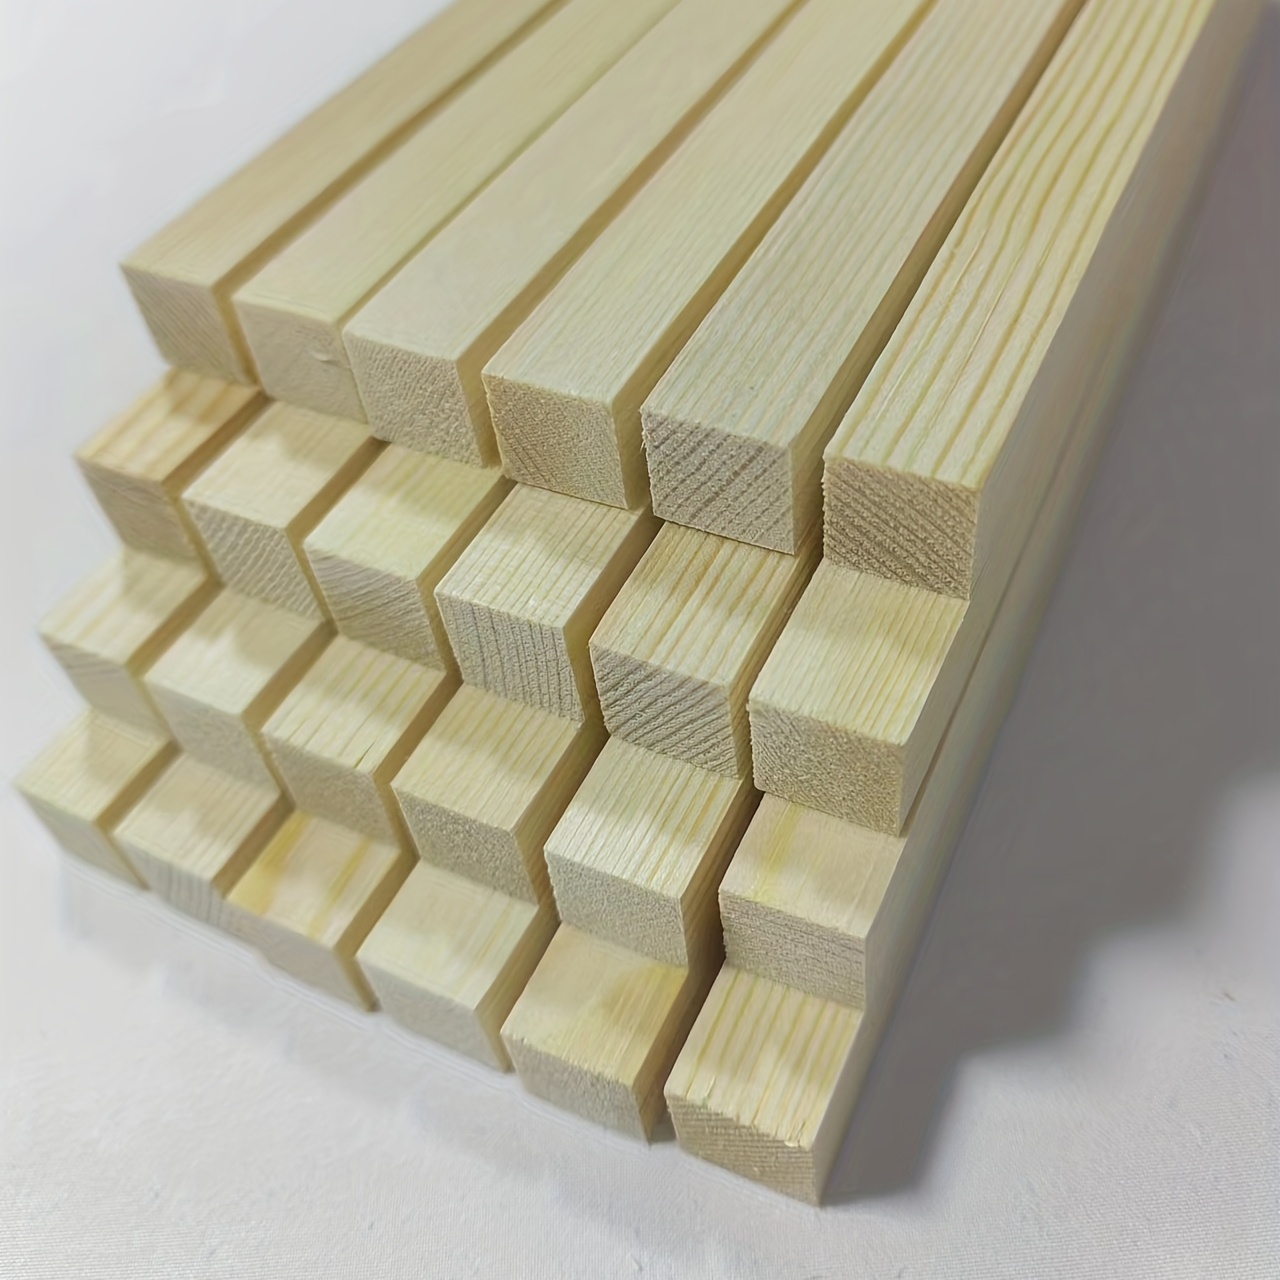  JAPCHET Paquete de 100 tacos cuadrados de madera de 12 x 1/2 x  1/2 pulgadas, tiras largas de madera natural sin terminar, varillas  cuadradas de madera dura para hacer modelos, decoraciones